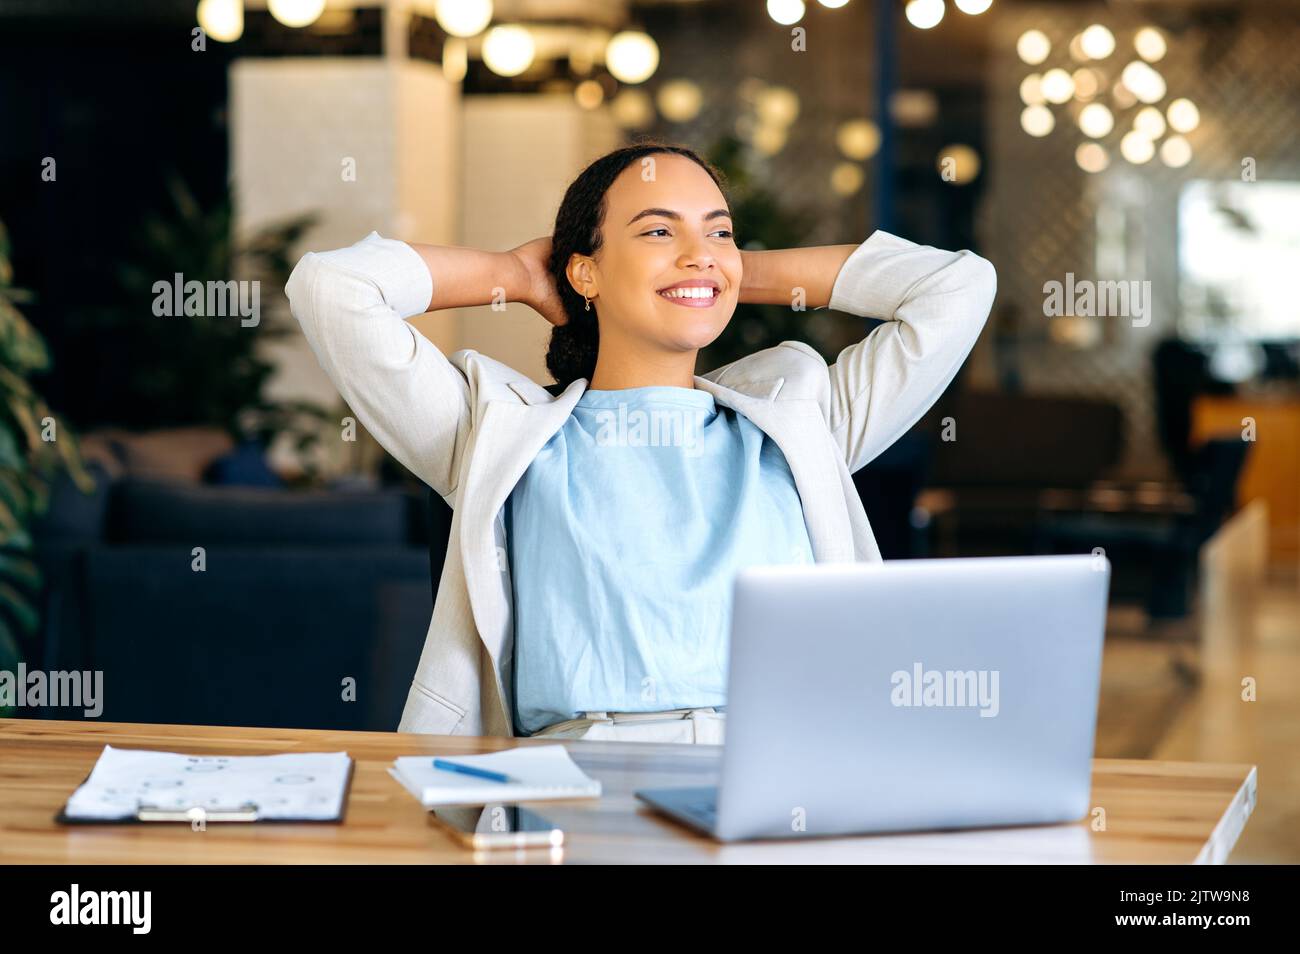 Ruhige, entspannte, gemischte Mitarbeiterin, die während der Arbeitszeit ausruht, im modernen Büro sitzt, die Hände hinter den Kopf stellt, sich mit dem Projekt zufrieden fühlt, die Arbeit befördert, in die Ferne blickt und freundlich lächelt Stockfoto